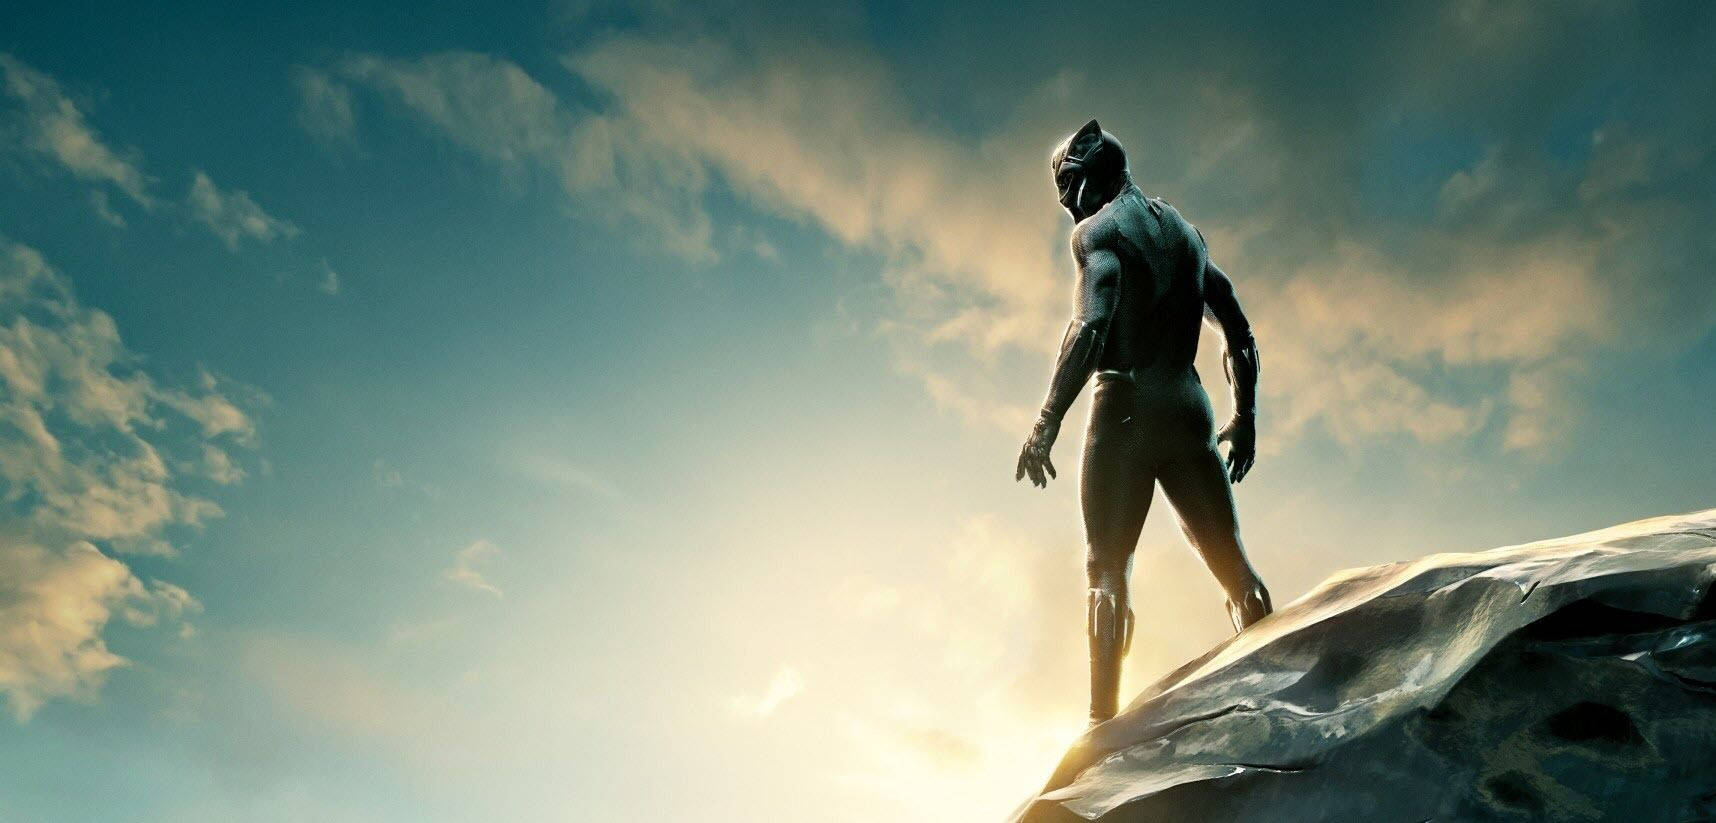 Black Panther Superhero Movie Wallpaper